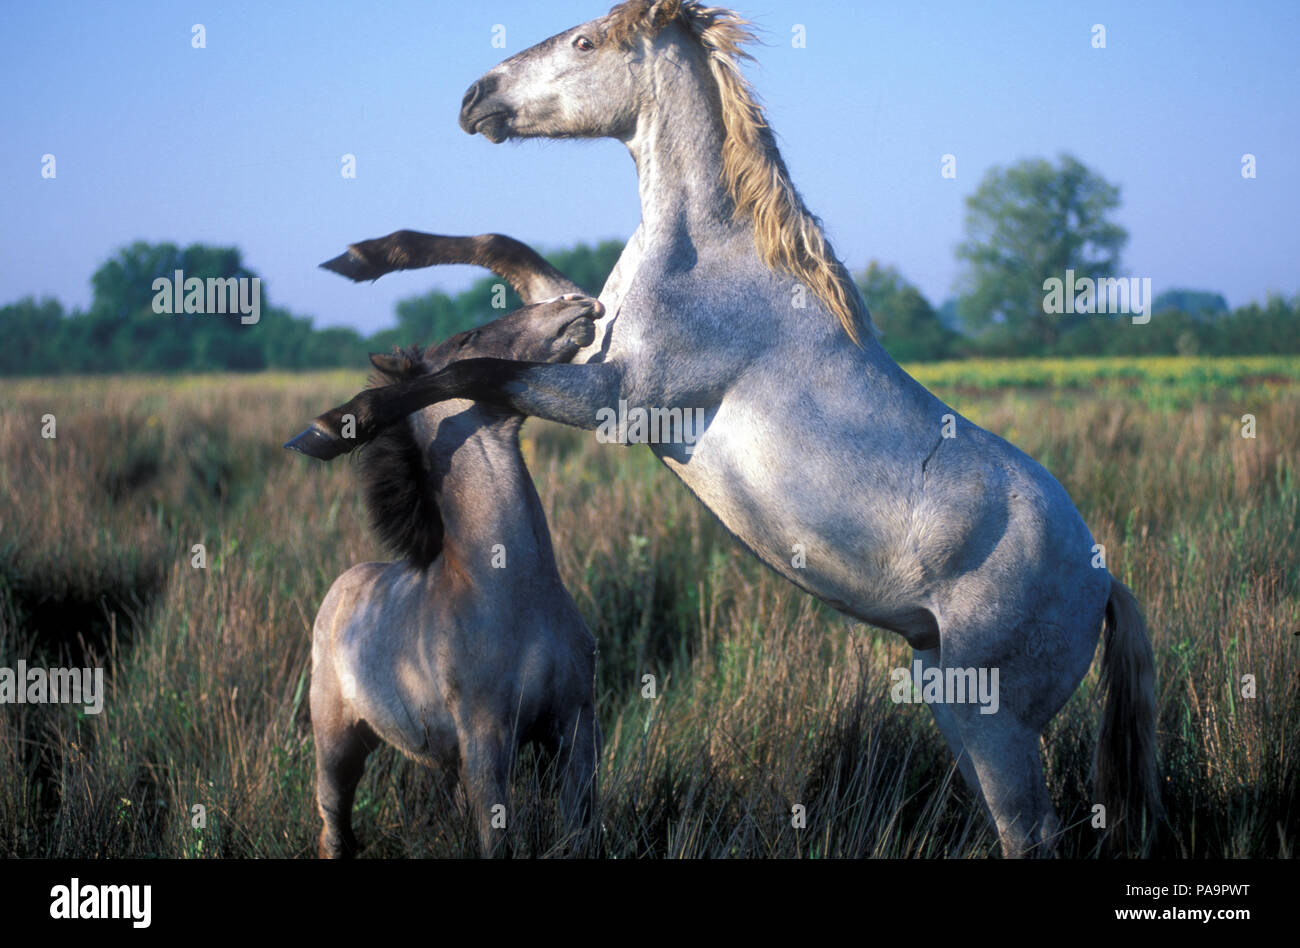 Cheval sauvage de Camargue - Lutte - Poulains - Cheval Camargue - Combat - Equus caballus - Sud de France Banque D'Images